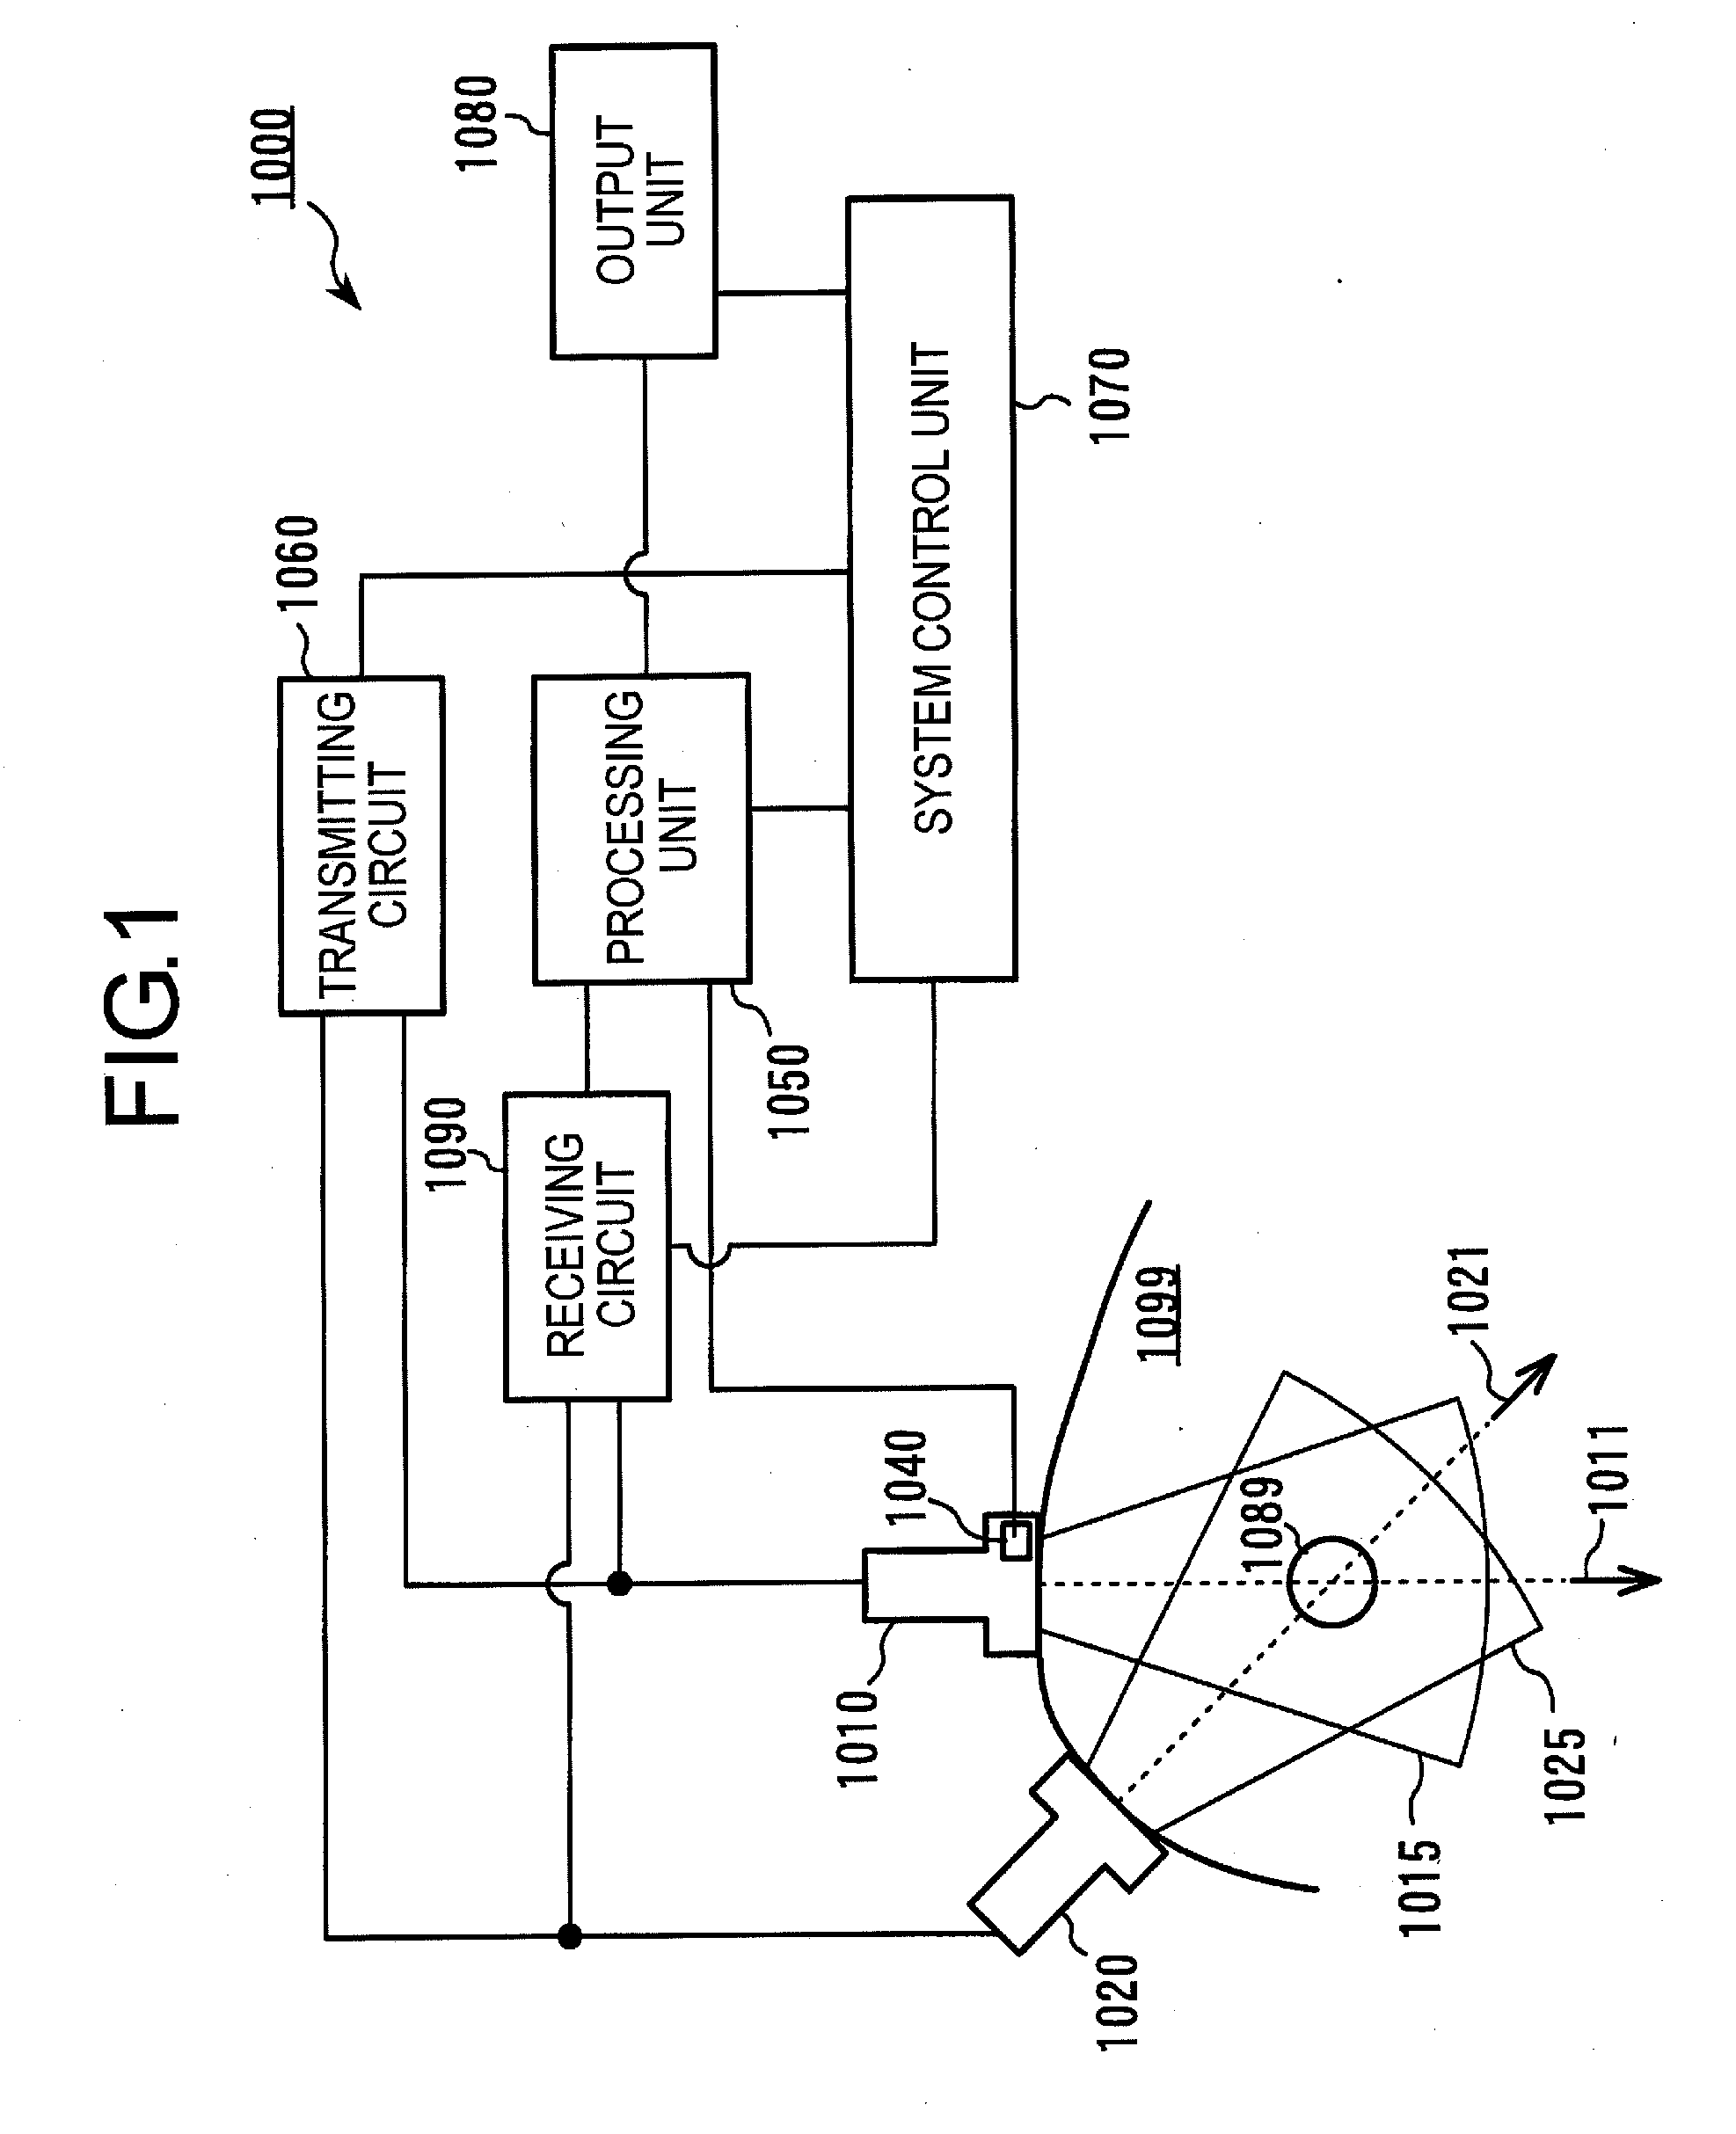 Ultrasonic measurement apparatus